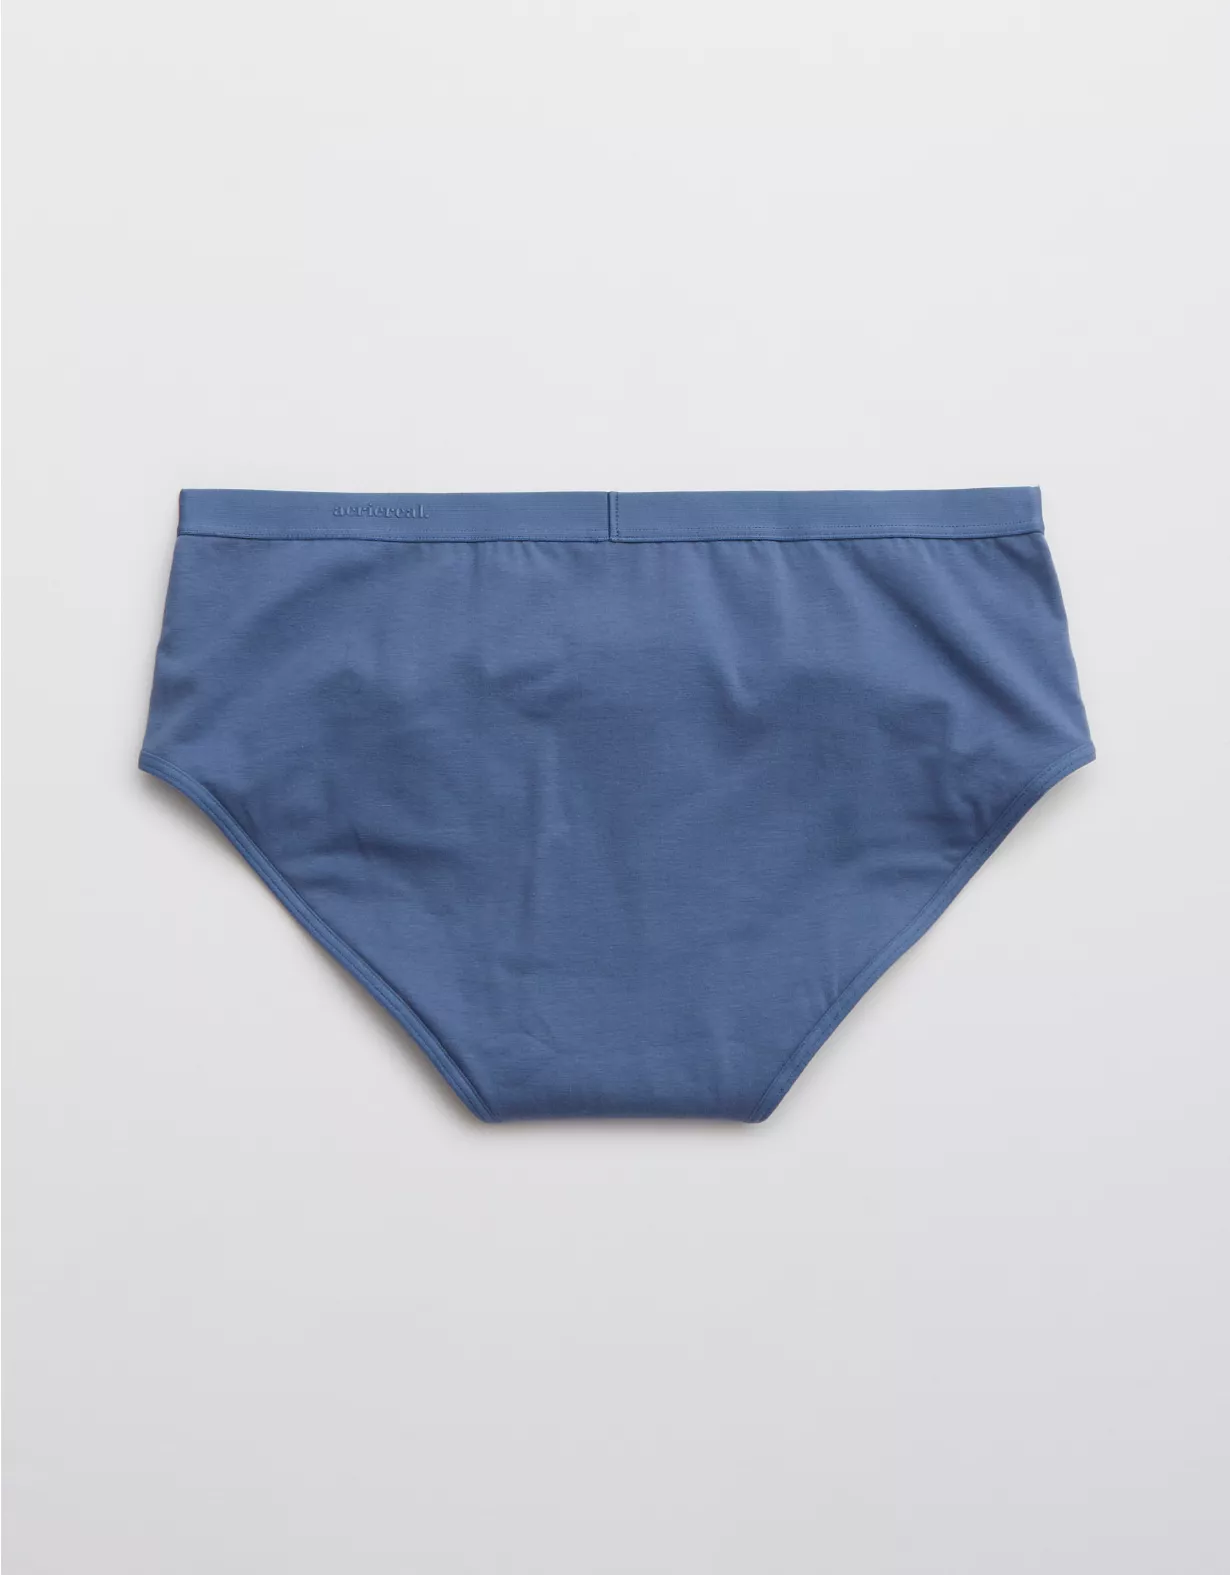 AerieREAL Period™ Underwear